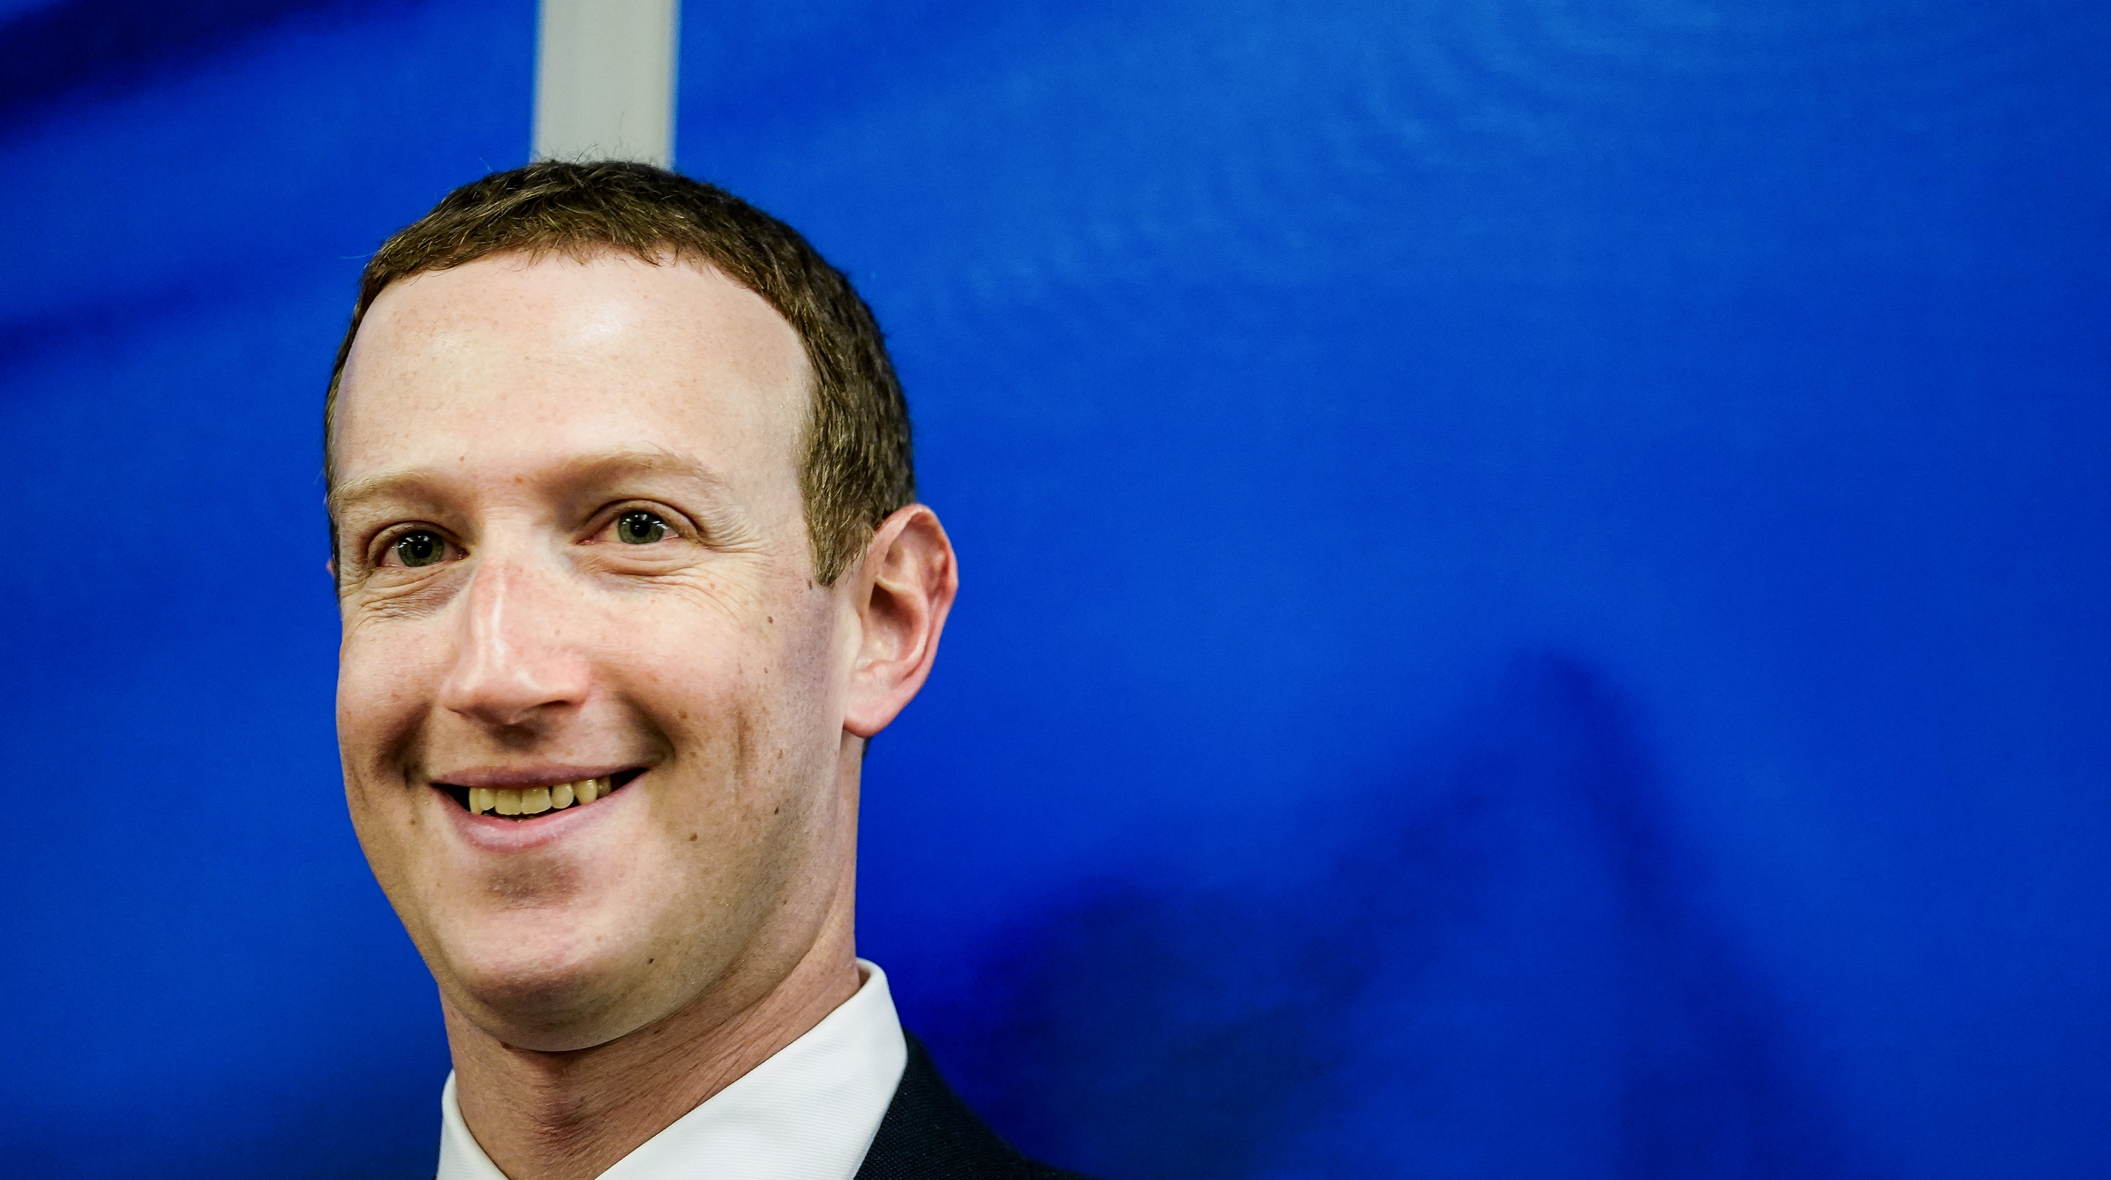 “Metamates”: così Zuckerberg vuole che si chiamino i dipendenti di Meta e Facebook